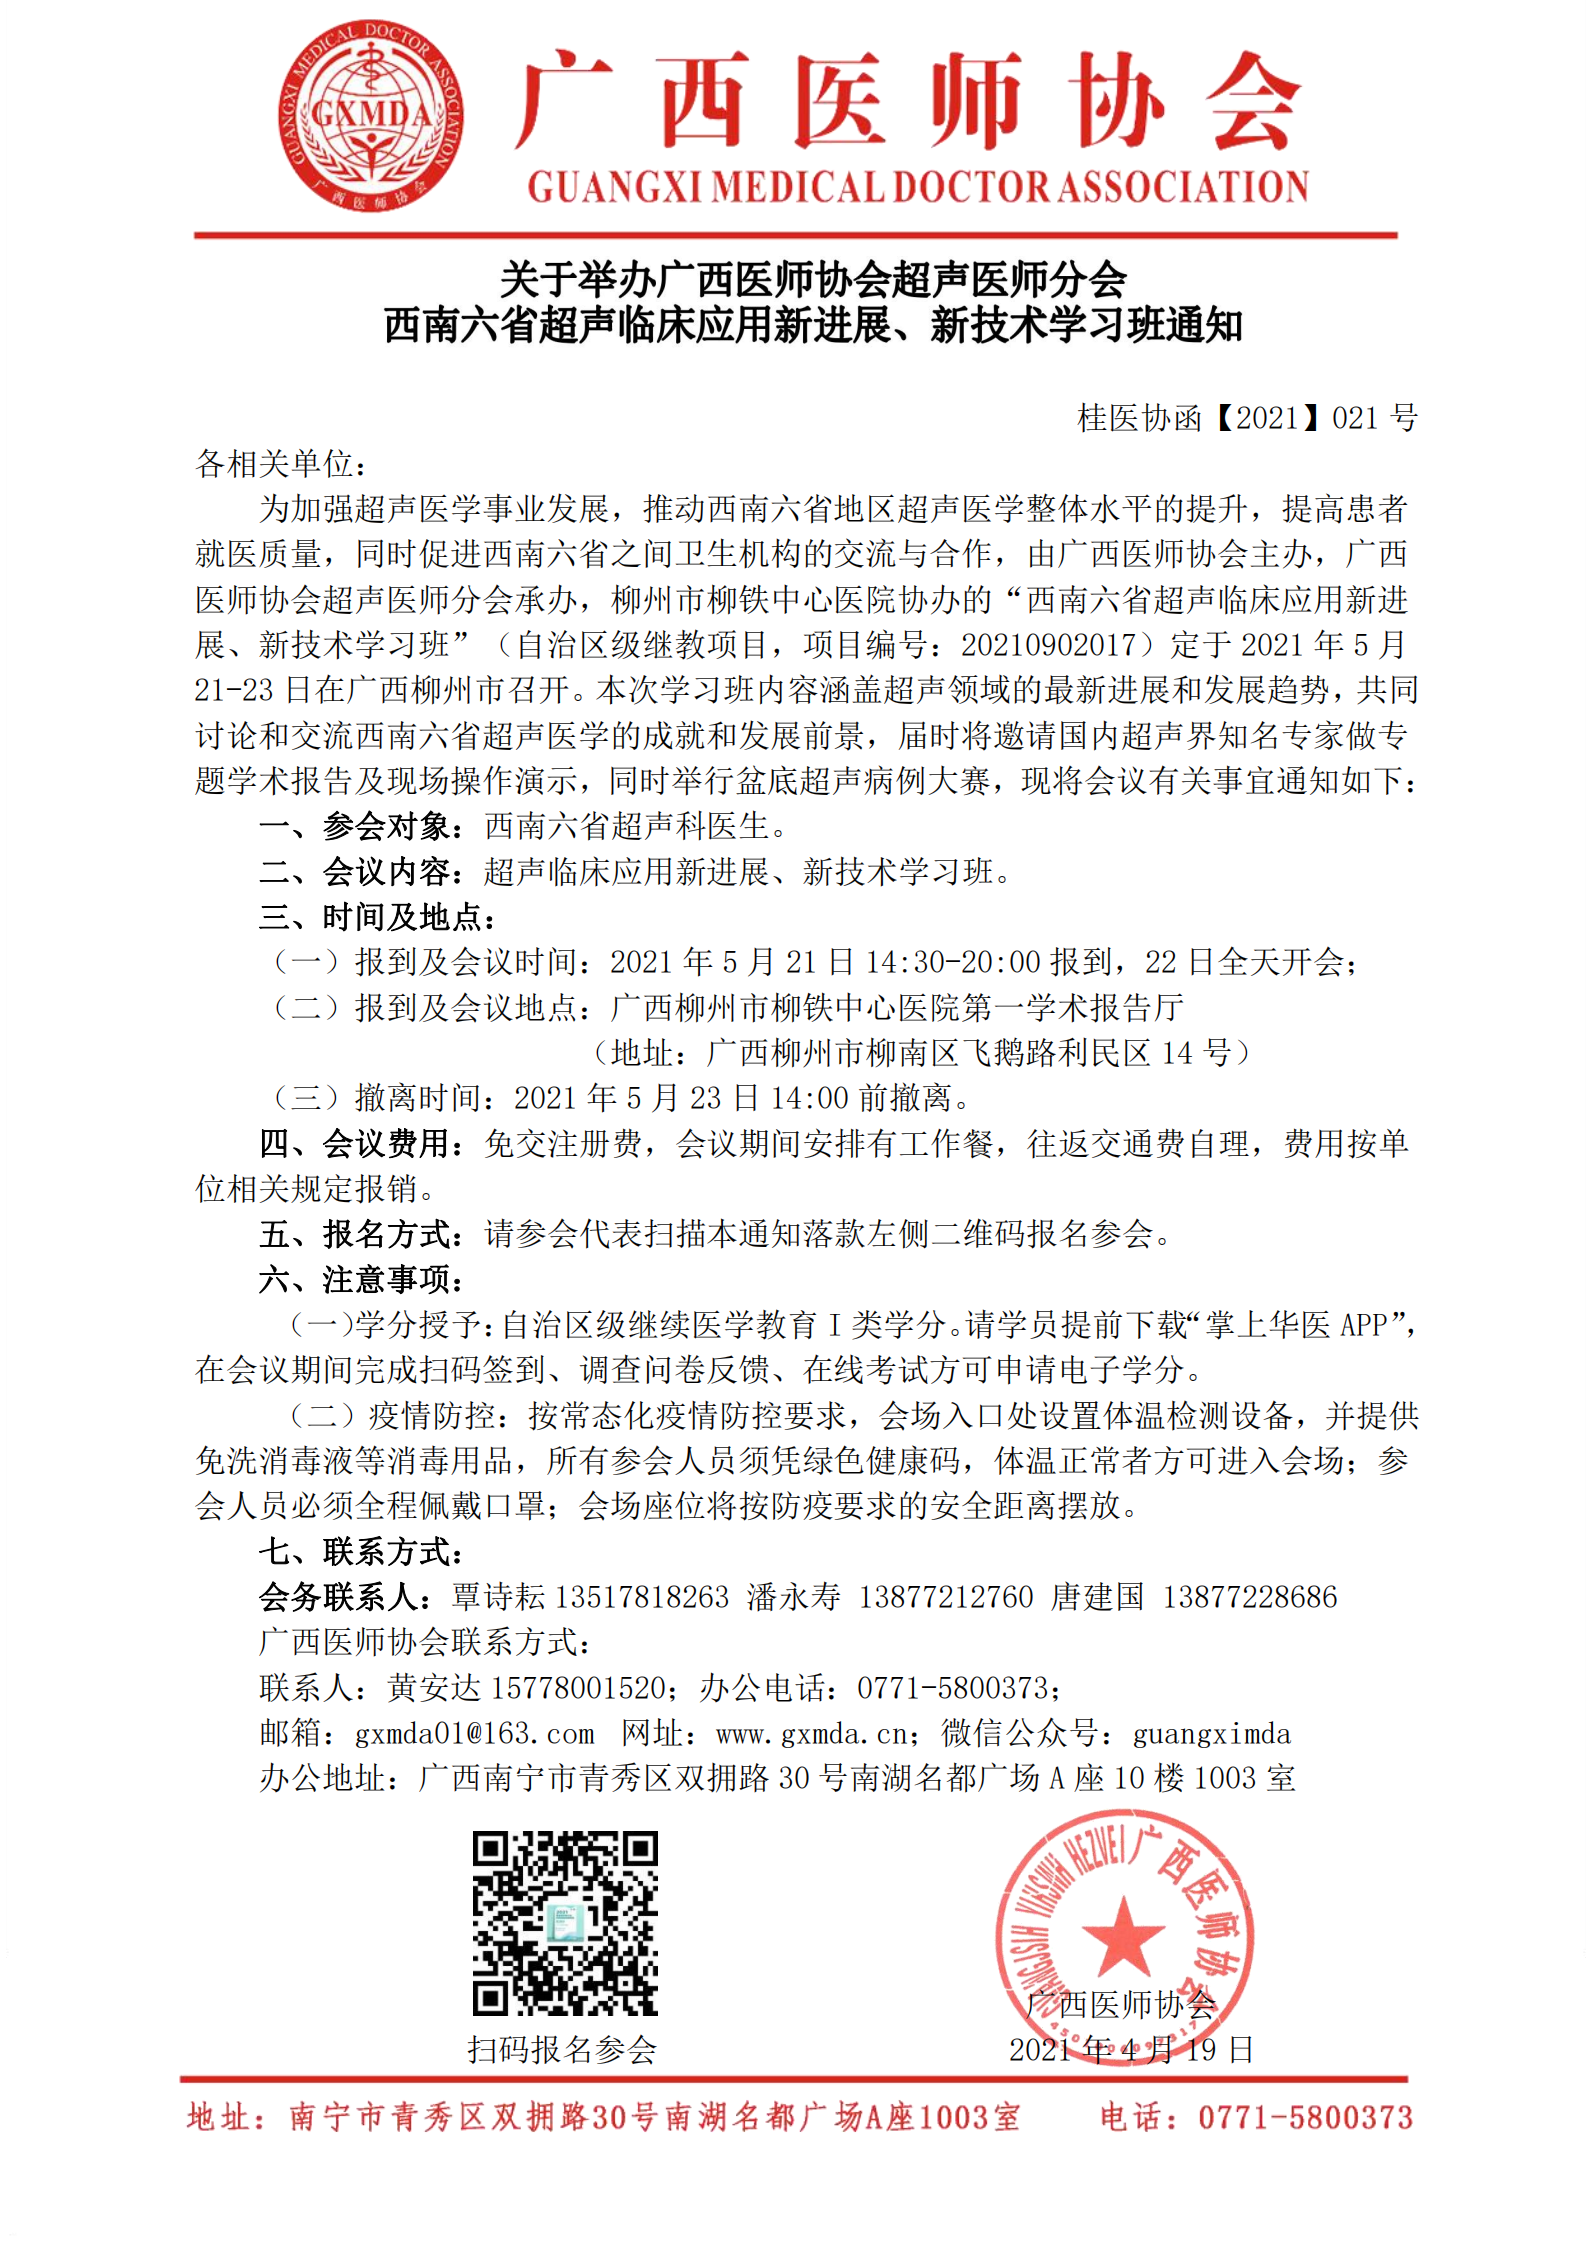 【2021】021号关于举办广西医师协会超声医师分会西南六省超声临床应用新进展、新技术学习班通知_00.png